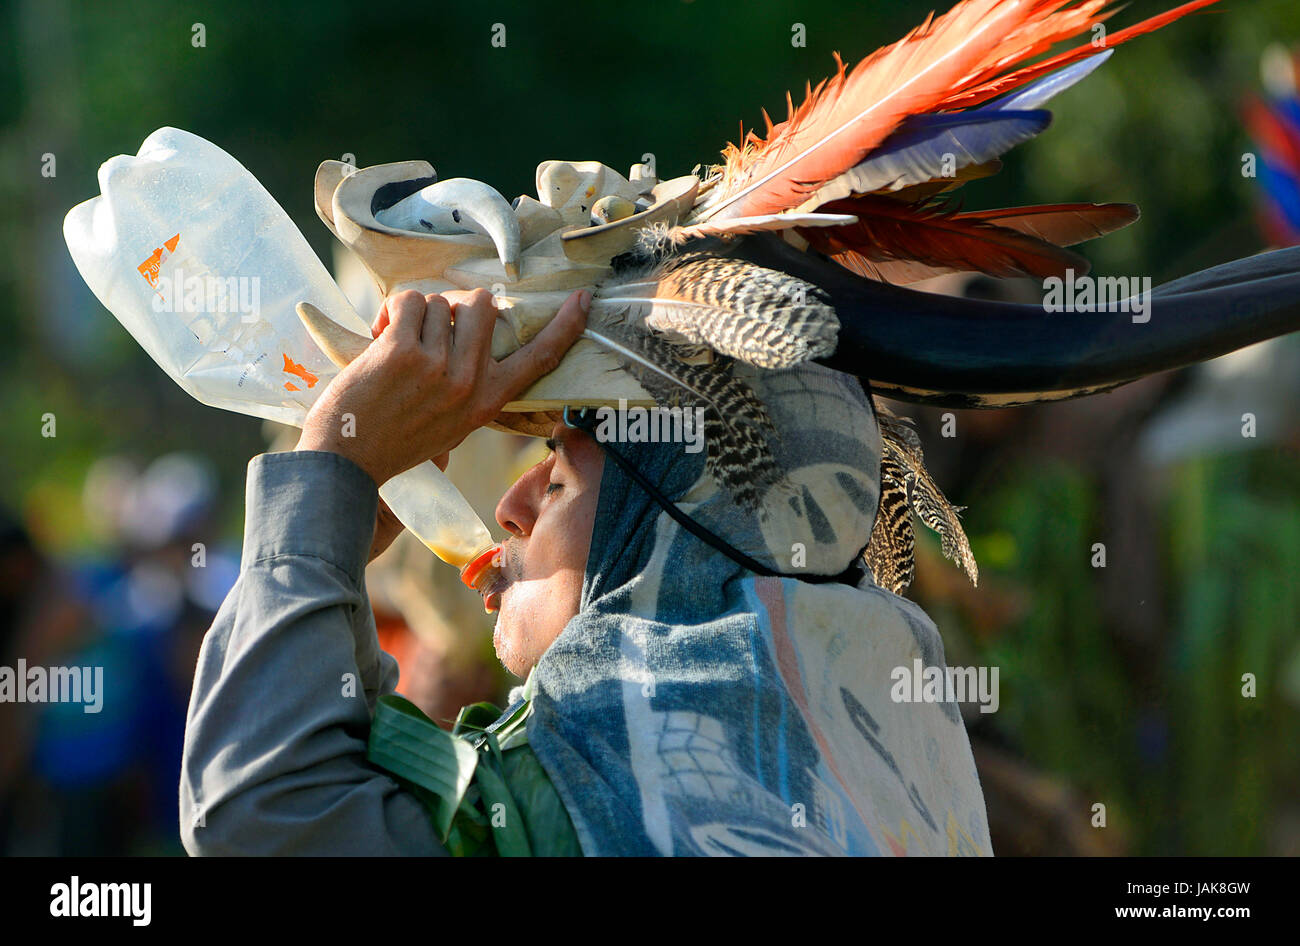 Un diavolo tira su la sua maschera per prendere una di swig chicha prima di continuare nella lotta durante la Juegos de Los Diablitos, una cerimonia indigena in Boruca Foto Stock